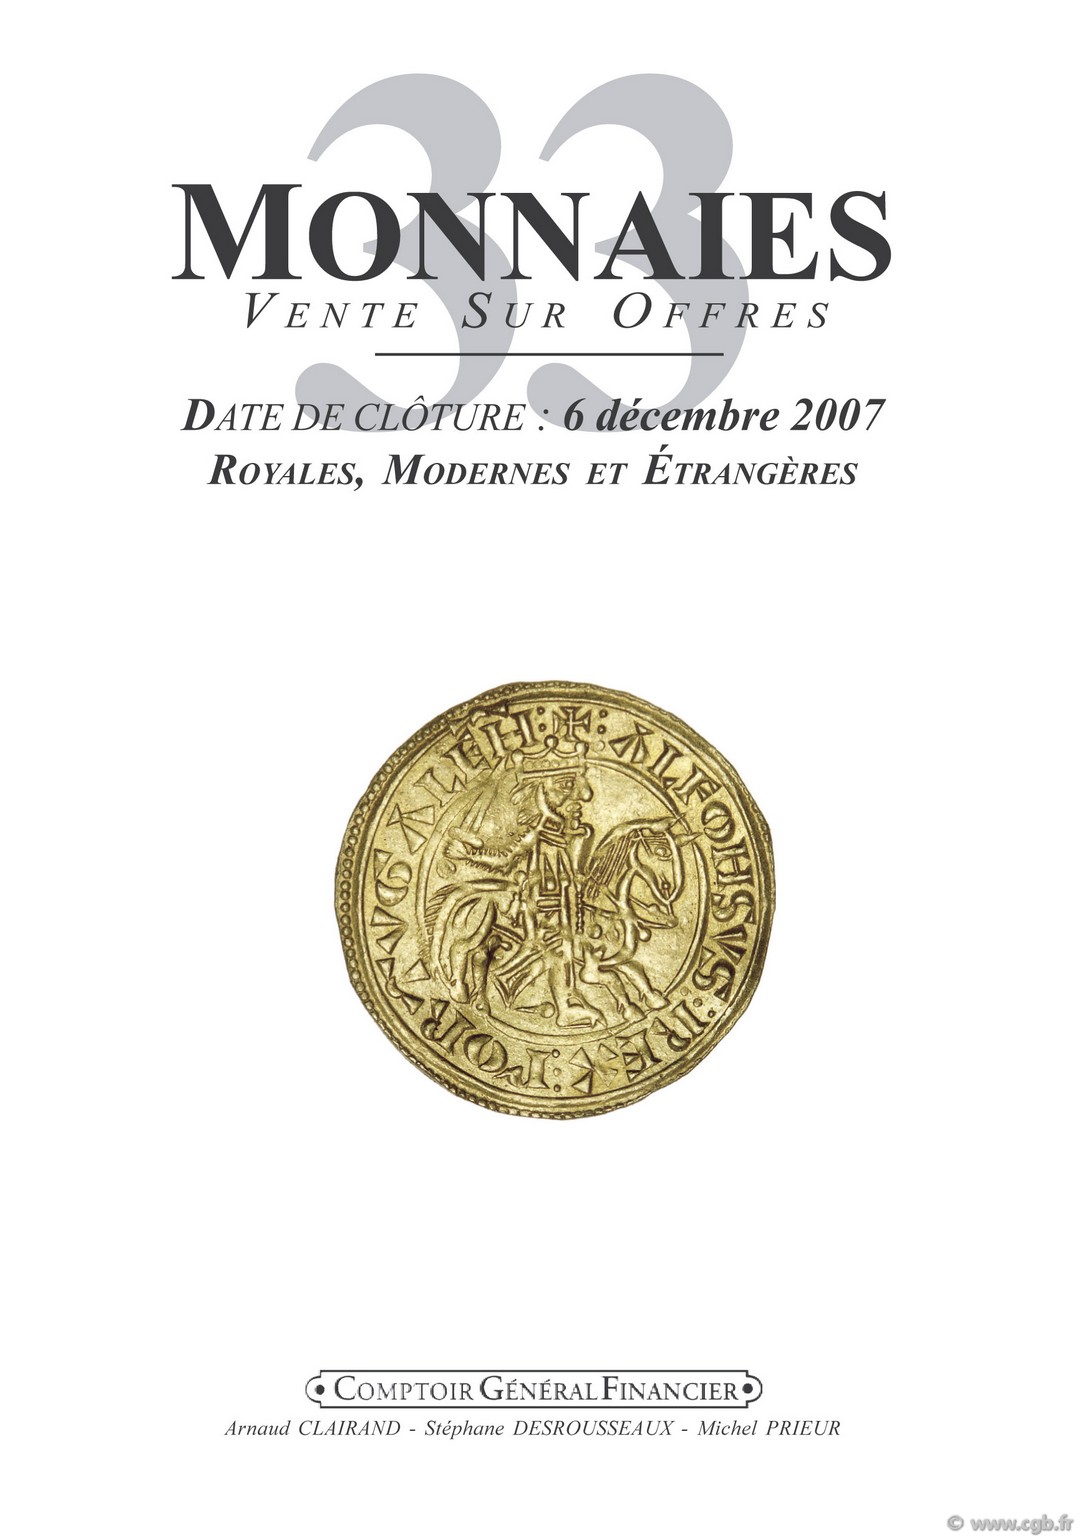 Monnaies 33 - Royales et modernes  CLAIRAND Arnaud, DESROUSSEAUX Stéphane, GOUET Samuel, PRIEUR Michel, SCHMITT Laurent